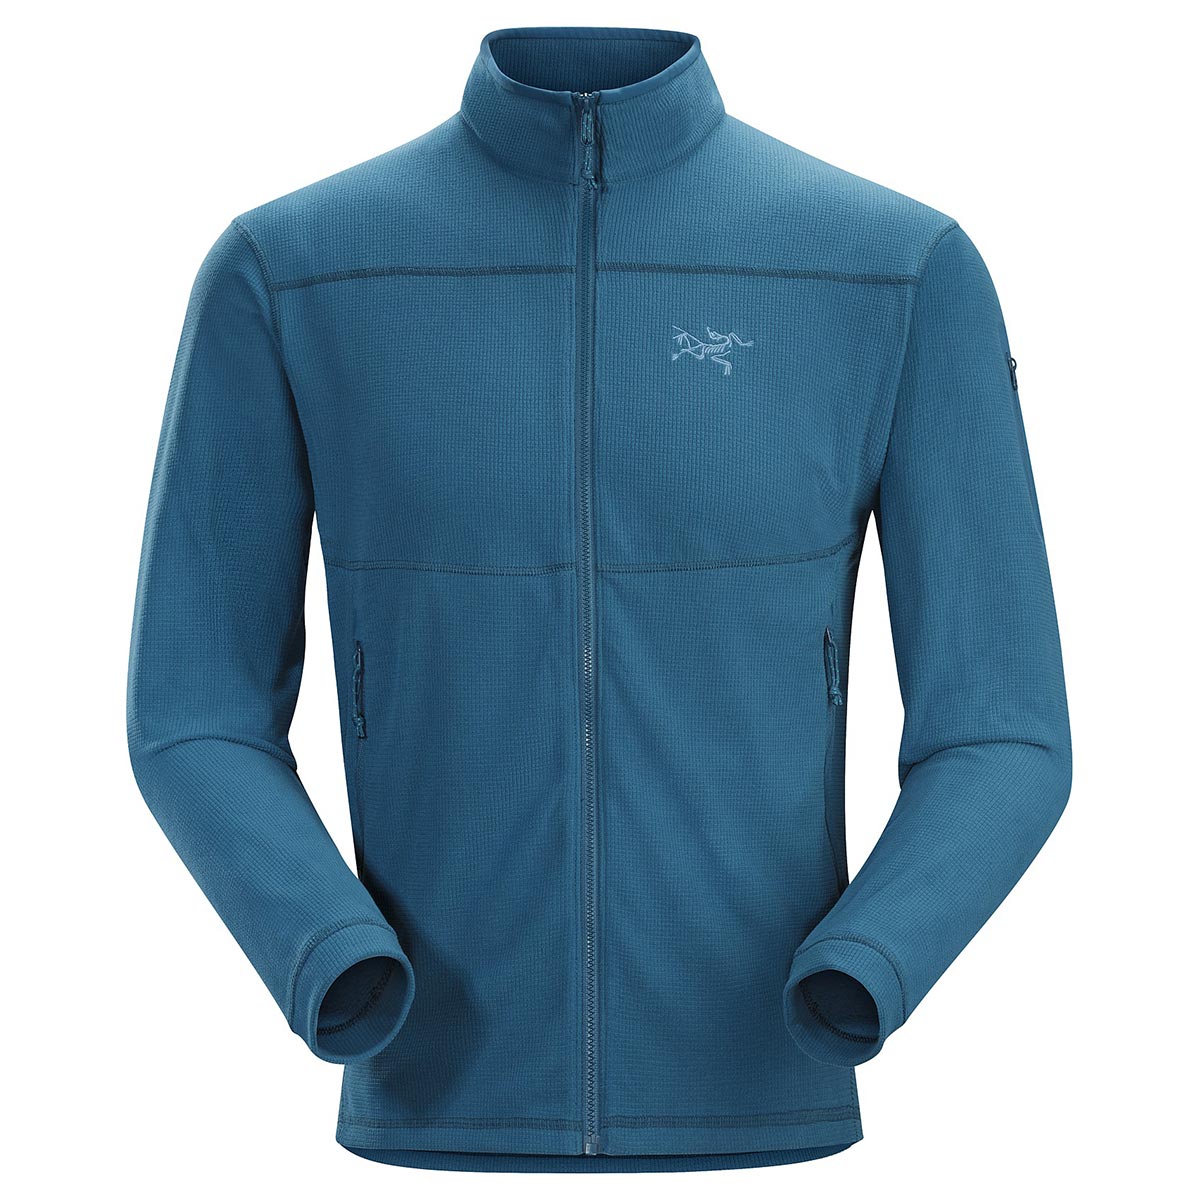 Arc'teryx Delta LT Jacket, men's, Fall 2017 colors of discontinued ...